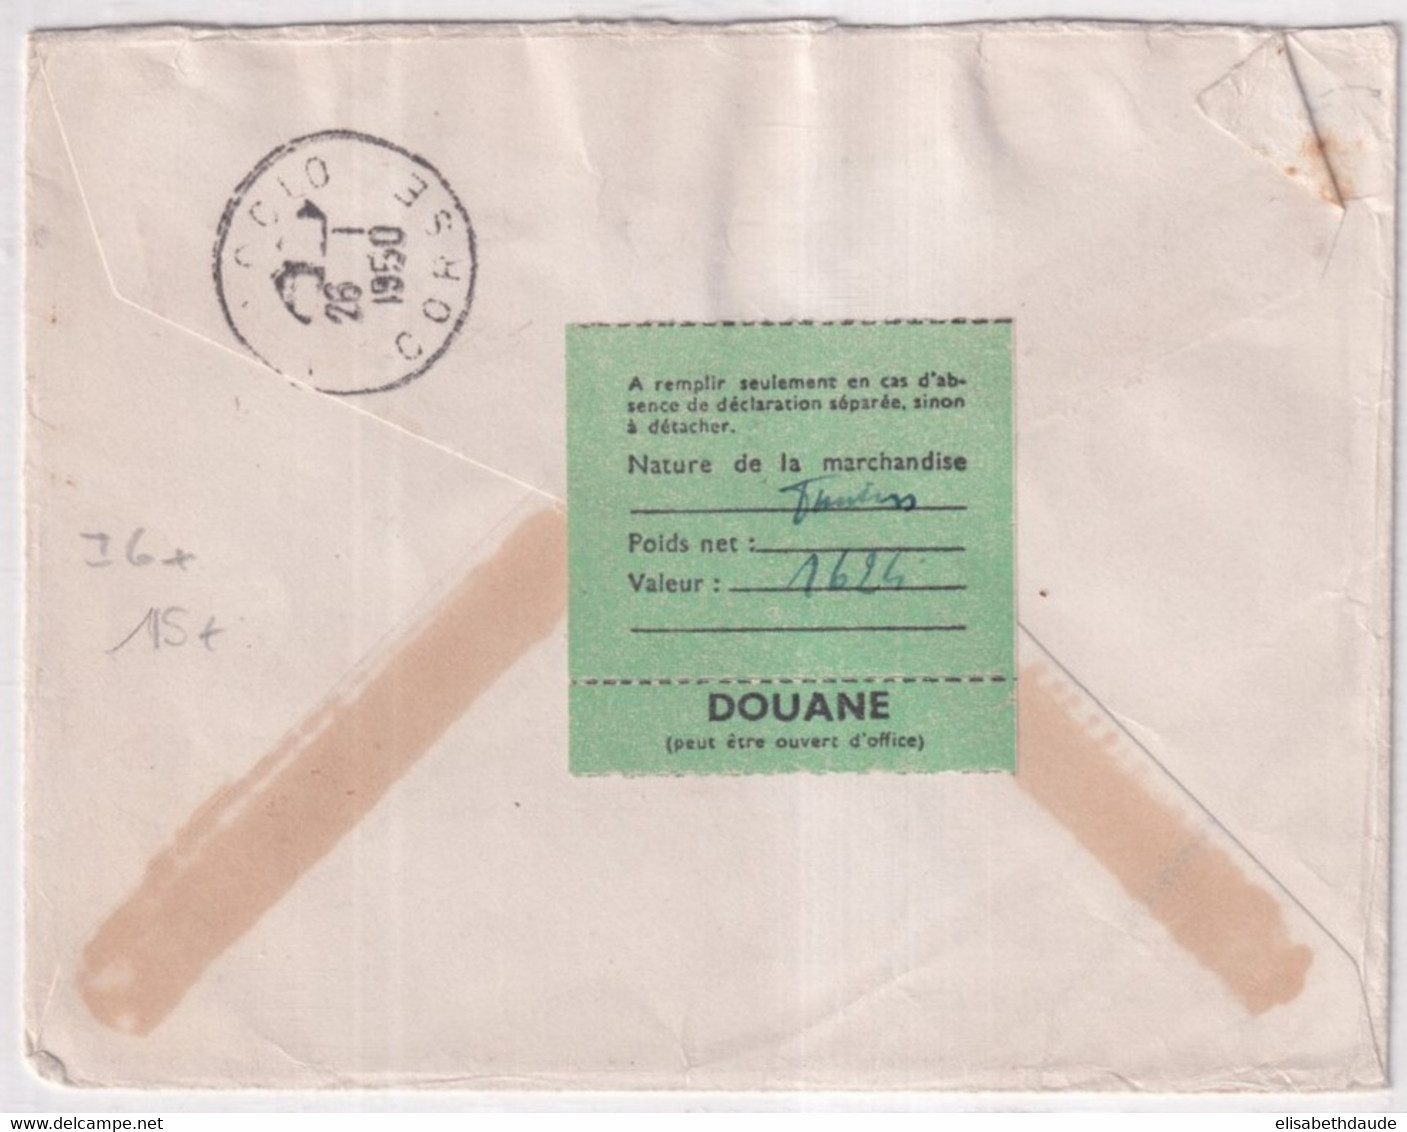 ALGERIE - 1950 - ENVELOPPE RECOMMANDEE De ALGER 4 ! CACHET RARE GUICHET Des RECOMMANDES => AJACCIO (CORSE) - Lettres & Documents